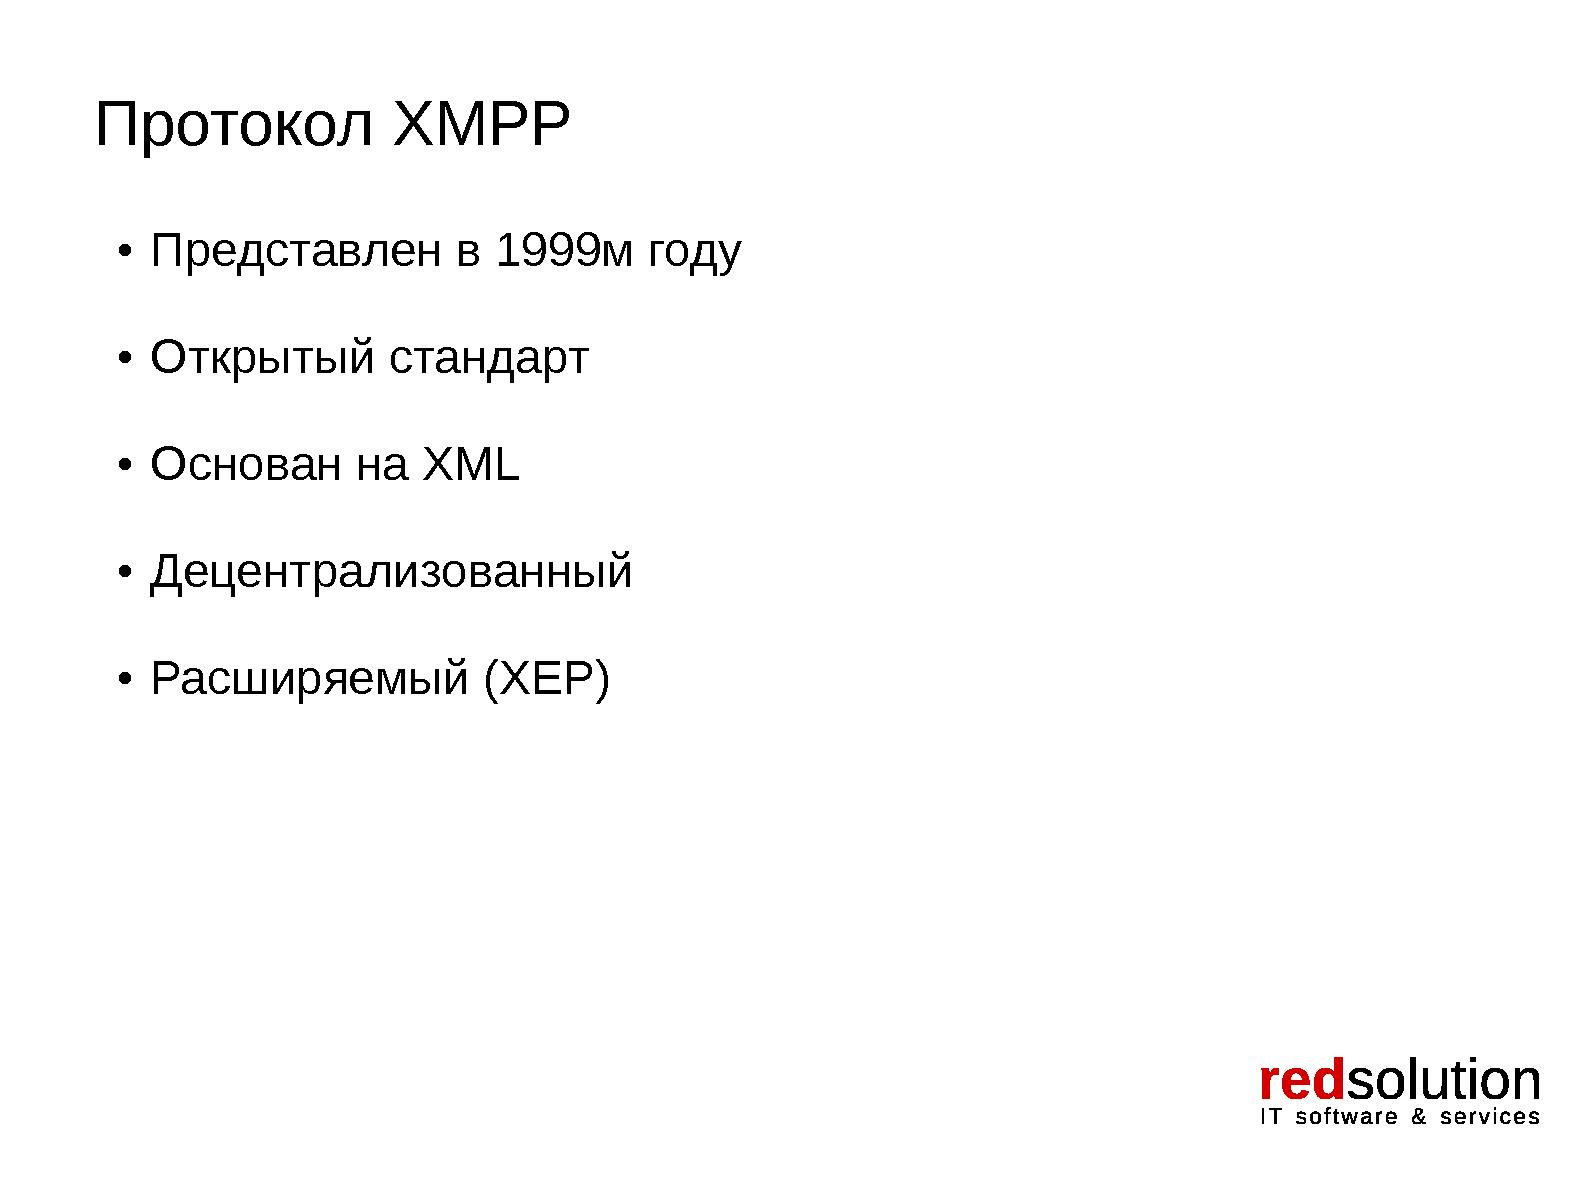 Файл:Xabber. XMPP-клиент для платформы Android. Проблемы и перспективы протокола XMPP (Андрей Ненахов, OSSDEVCONF-2014).pdf